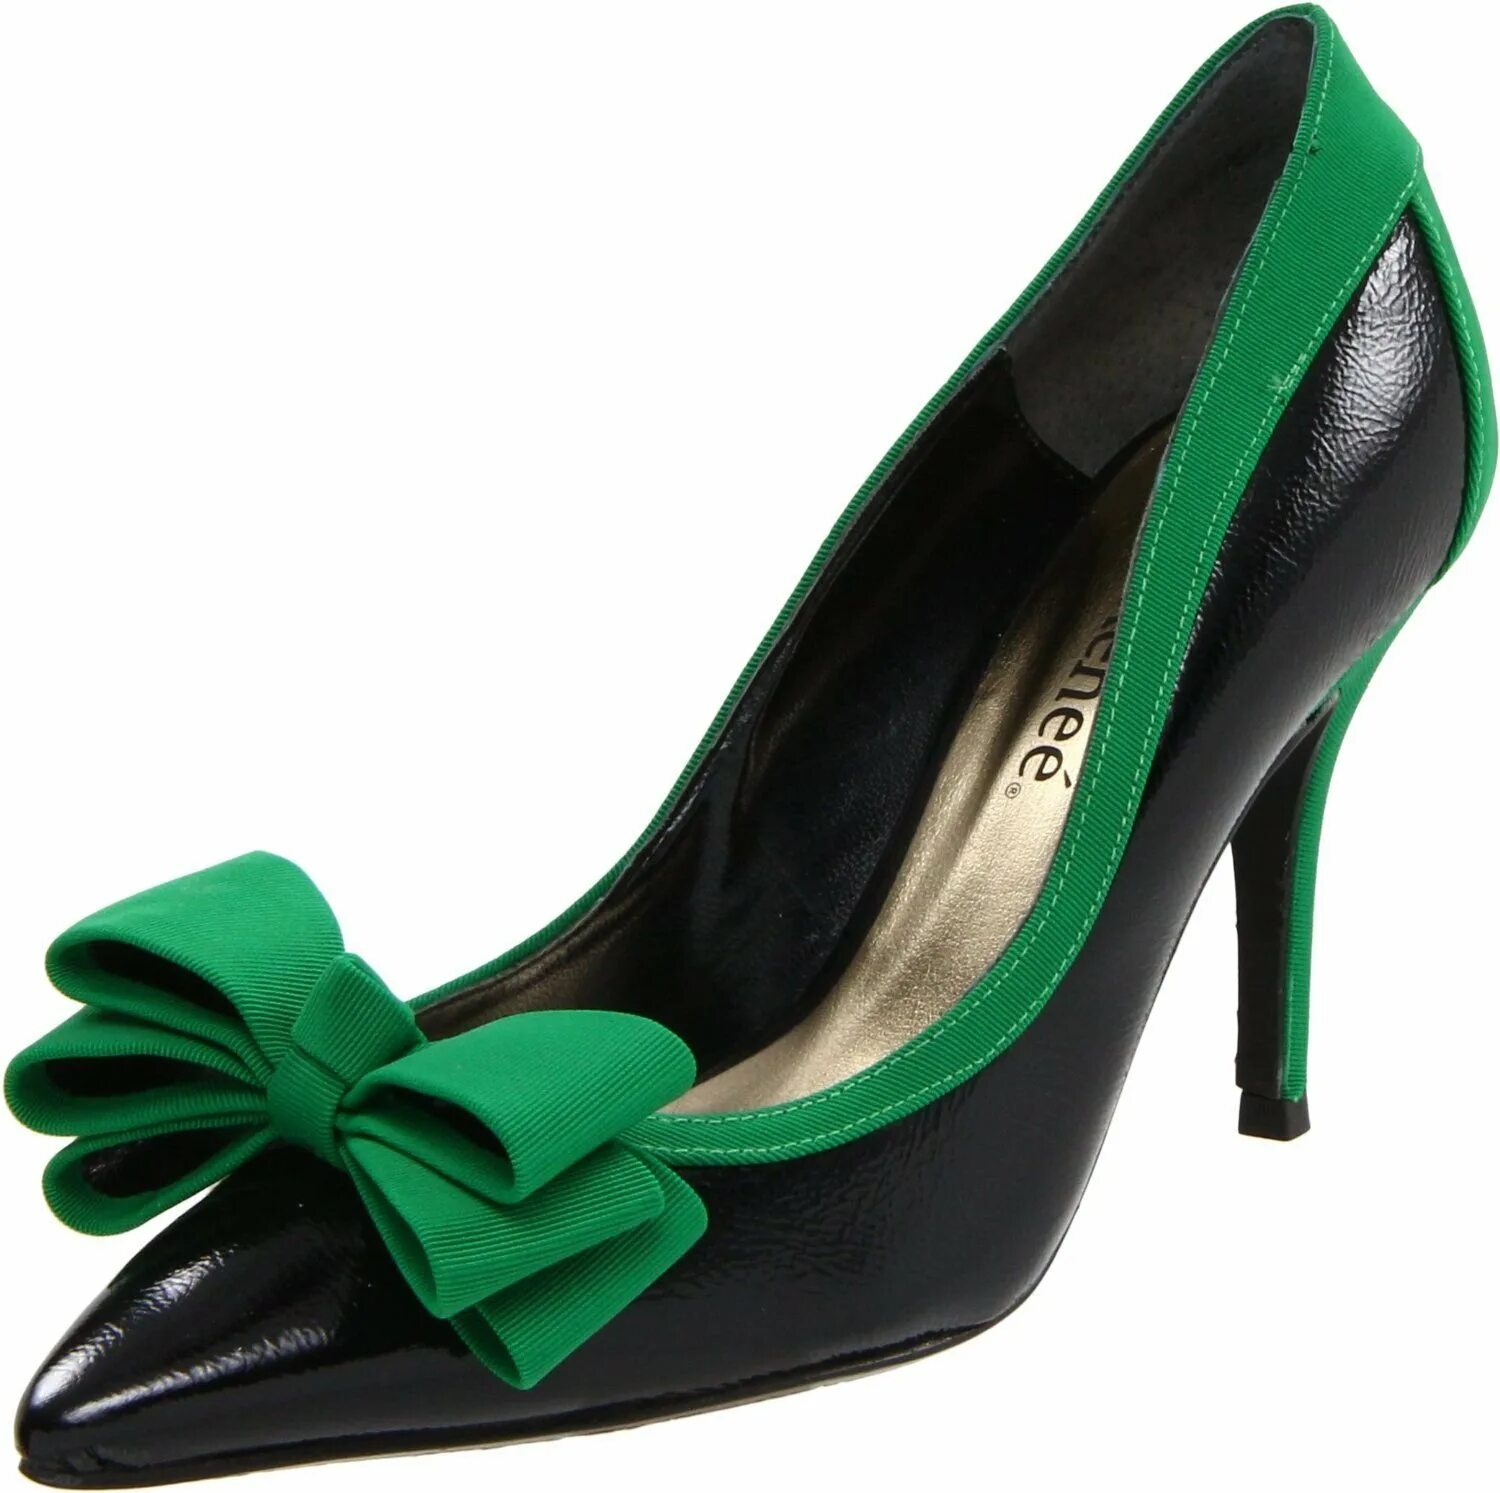 Обувь green. Туфли Tangolera Изумрудные. Alba замшевые Изумрудные туфли. Туфли Бонита изумрудный. Туфли Балдини зеленые.